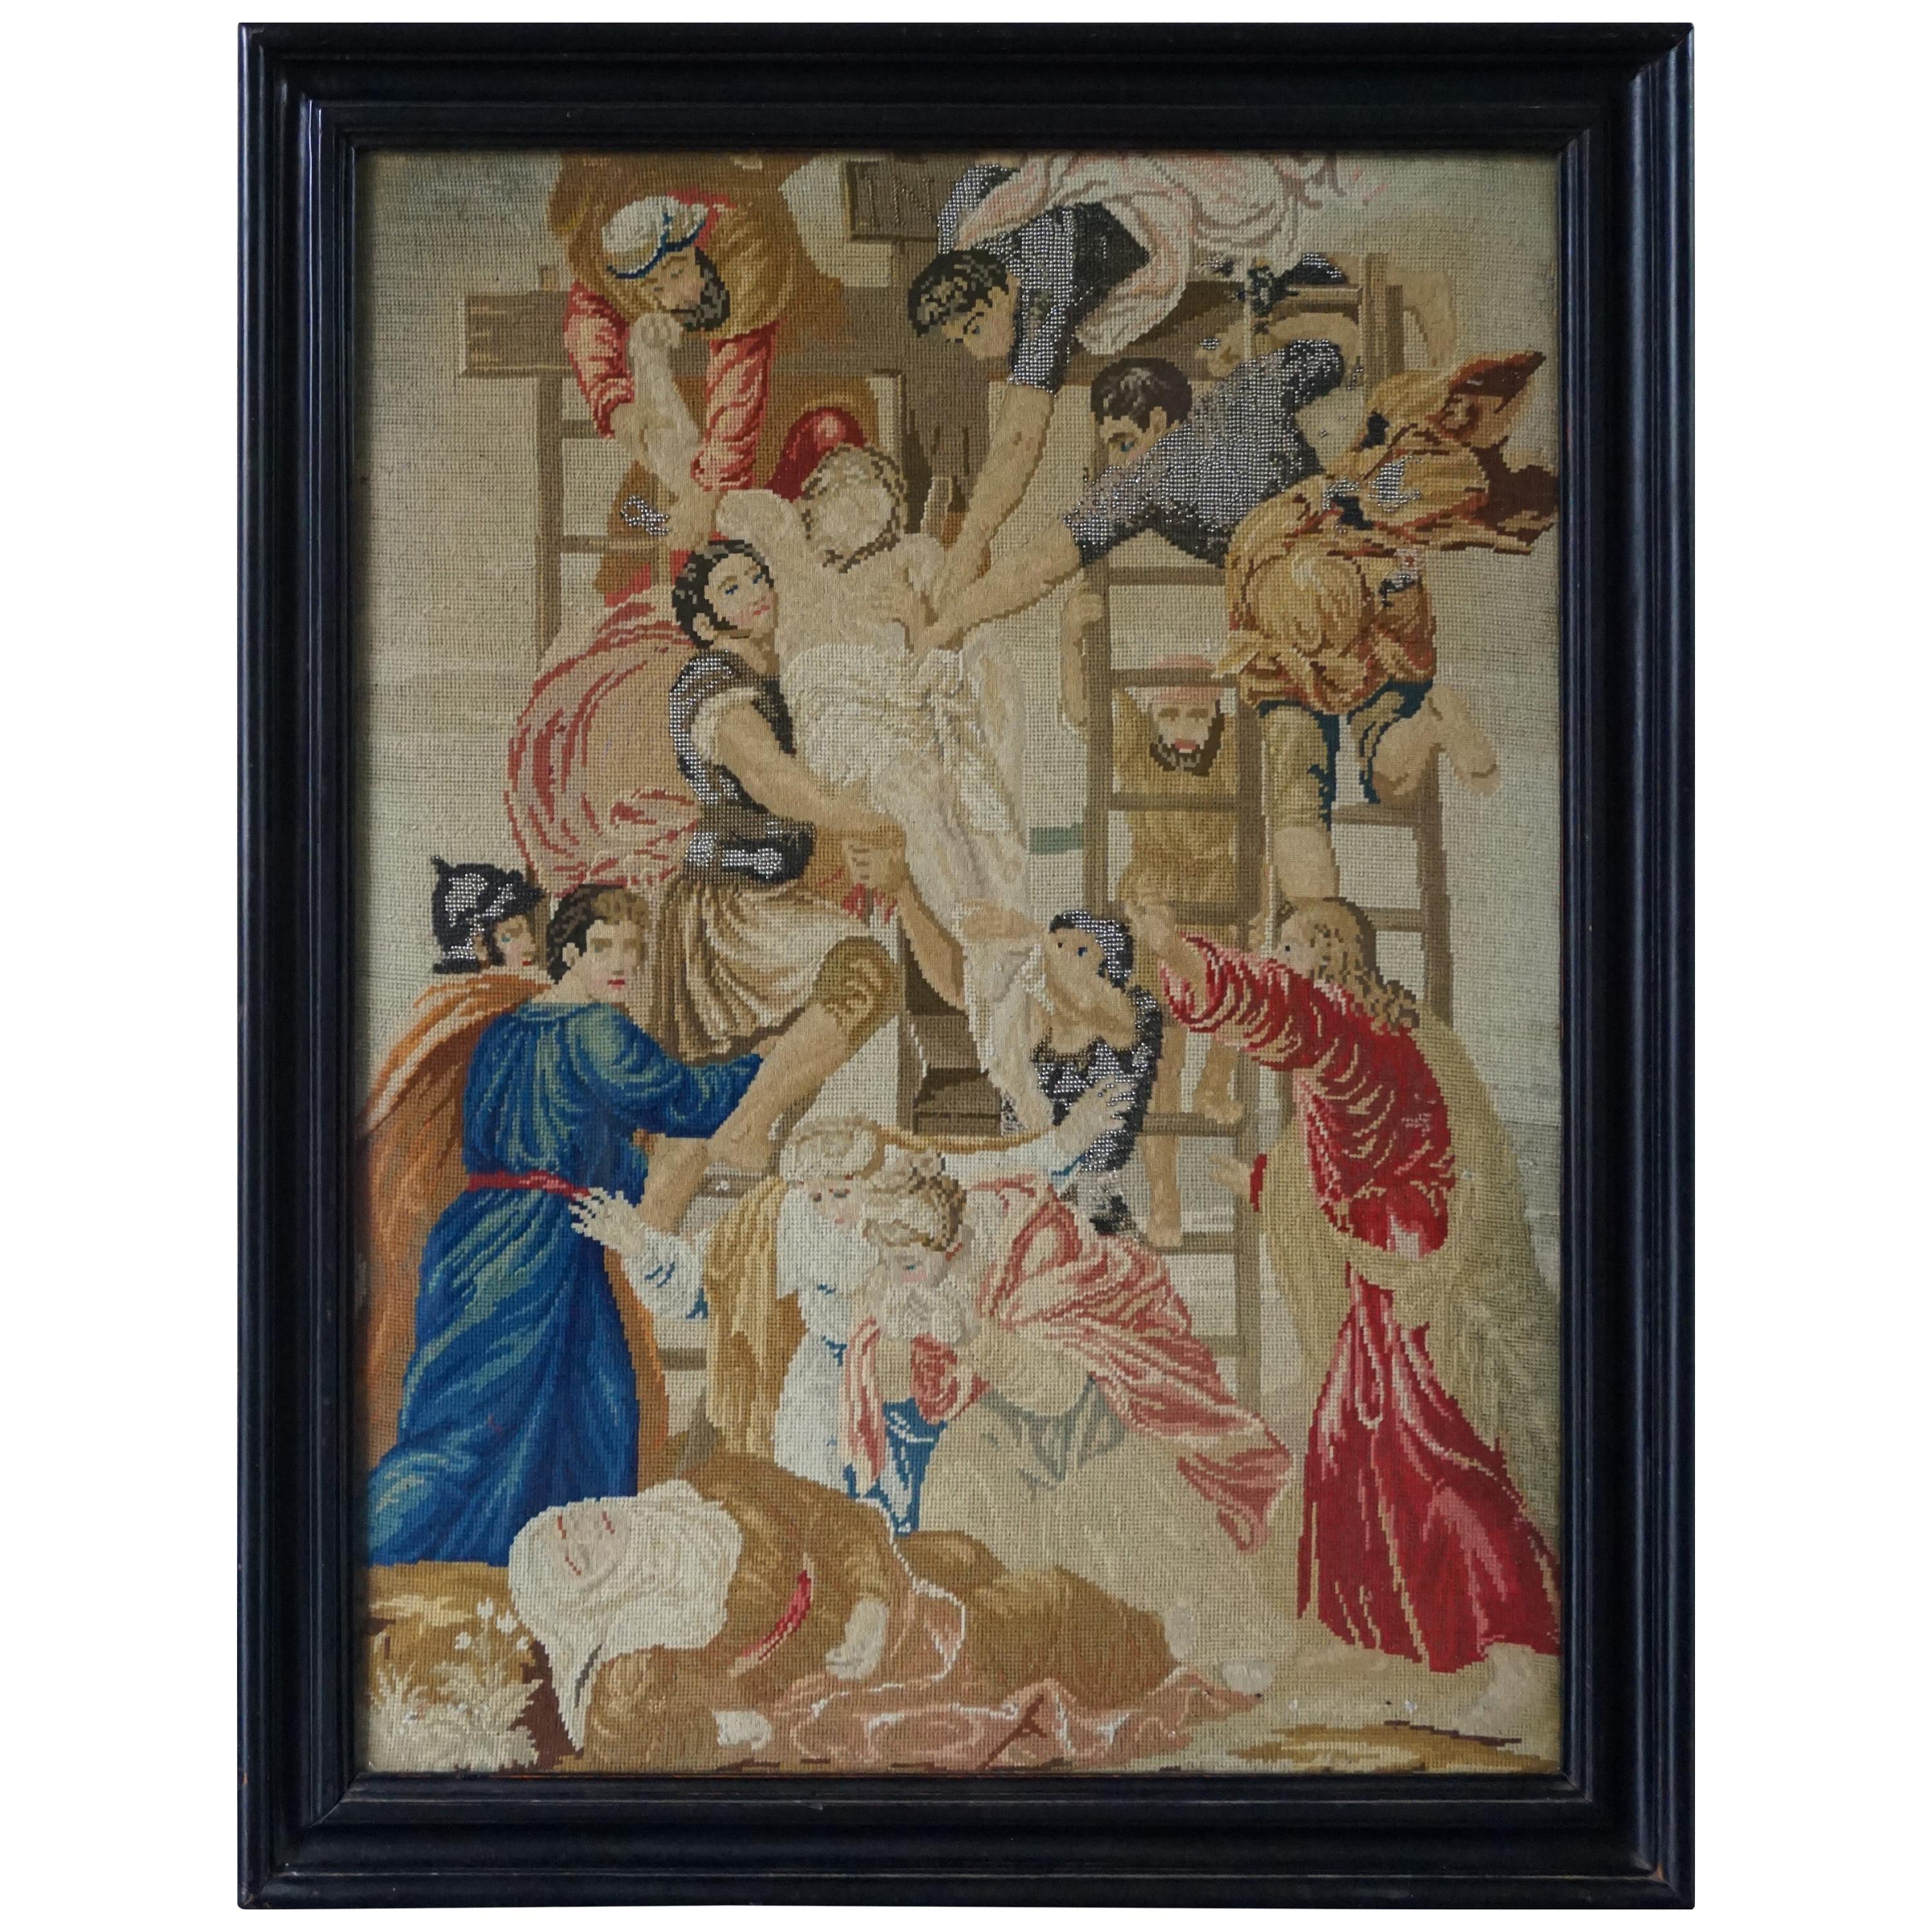 The Stunning Mid-1800s Handcrafted Embroidery of Jesus's Descent from the Cross (Broderie artisanale du milieu du XIXe siècle représentant la descente de Jésus de la croix)